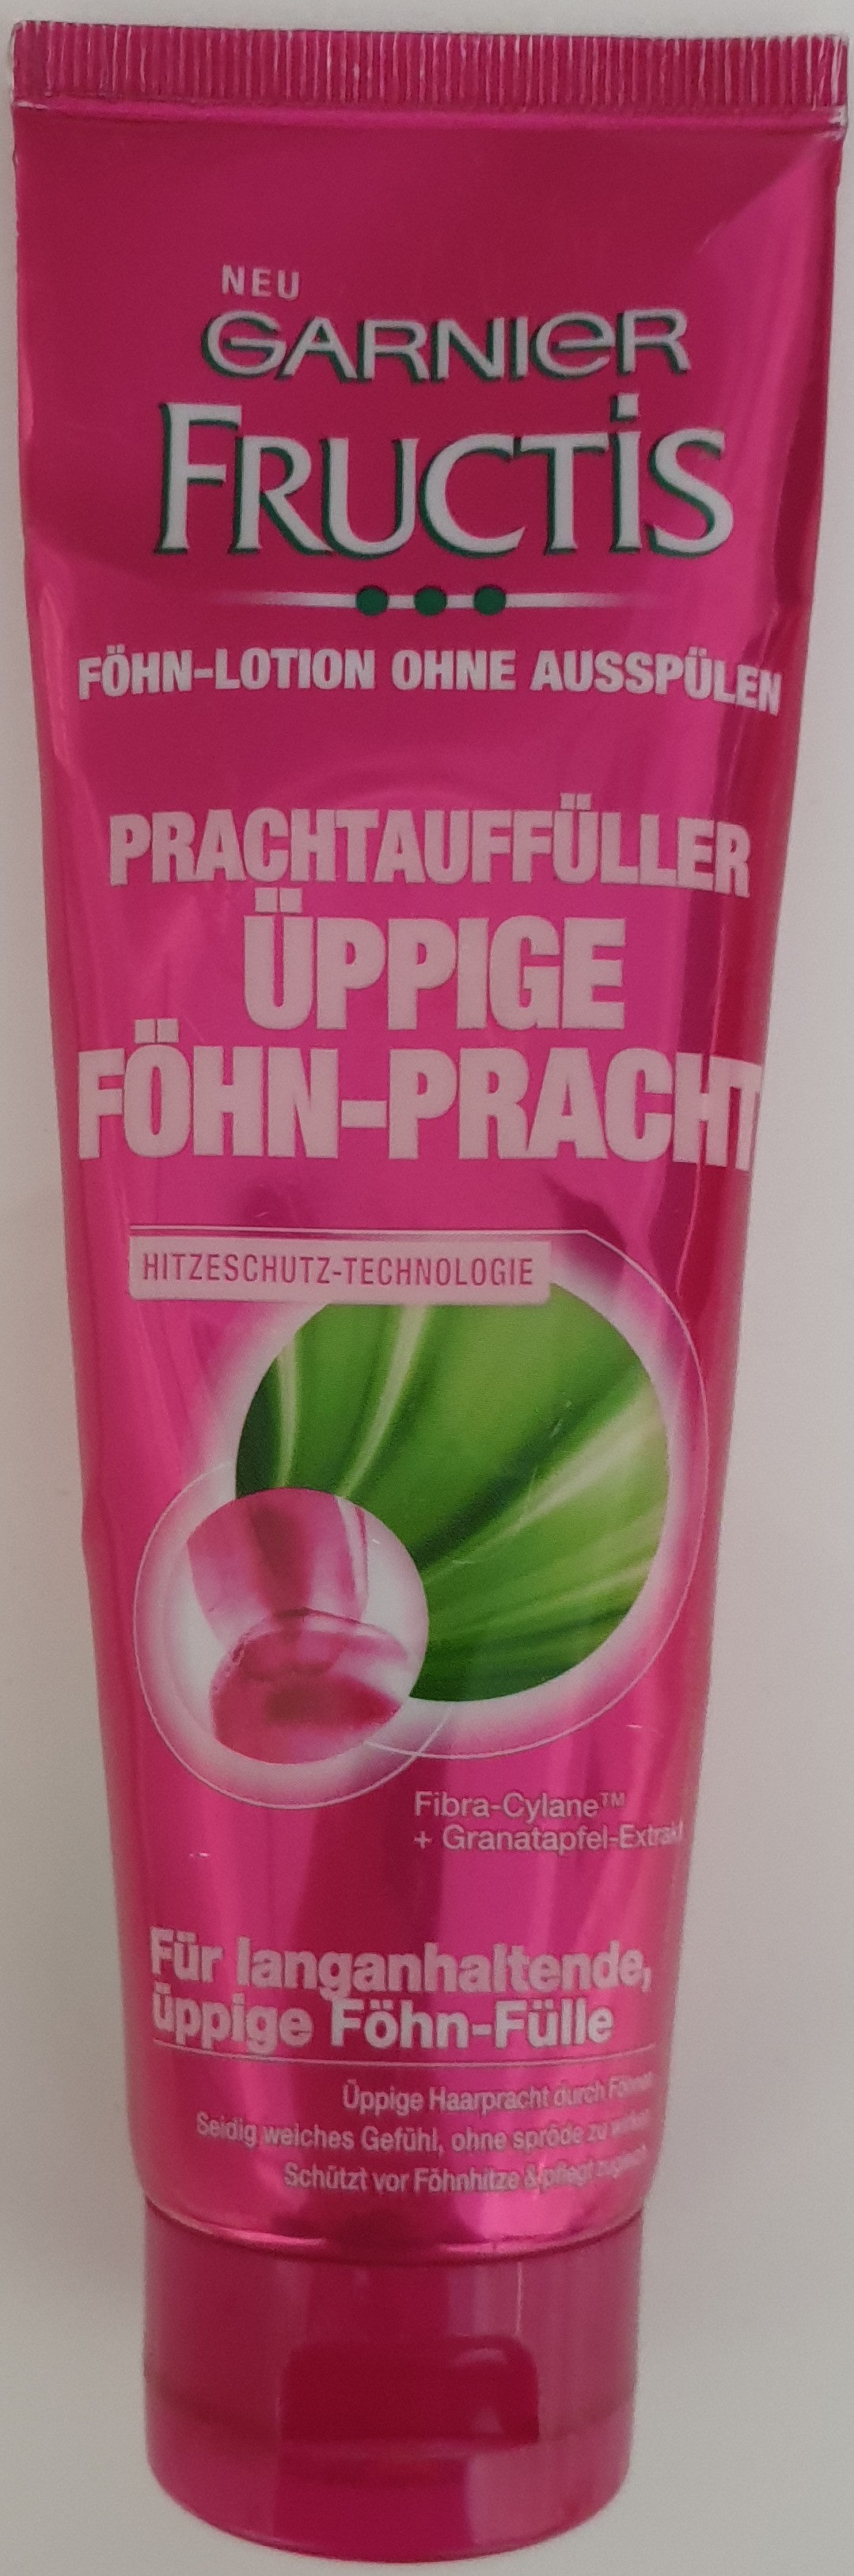 Fructis Prachtauffüller Föhn-Pracht - Продукт - de